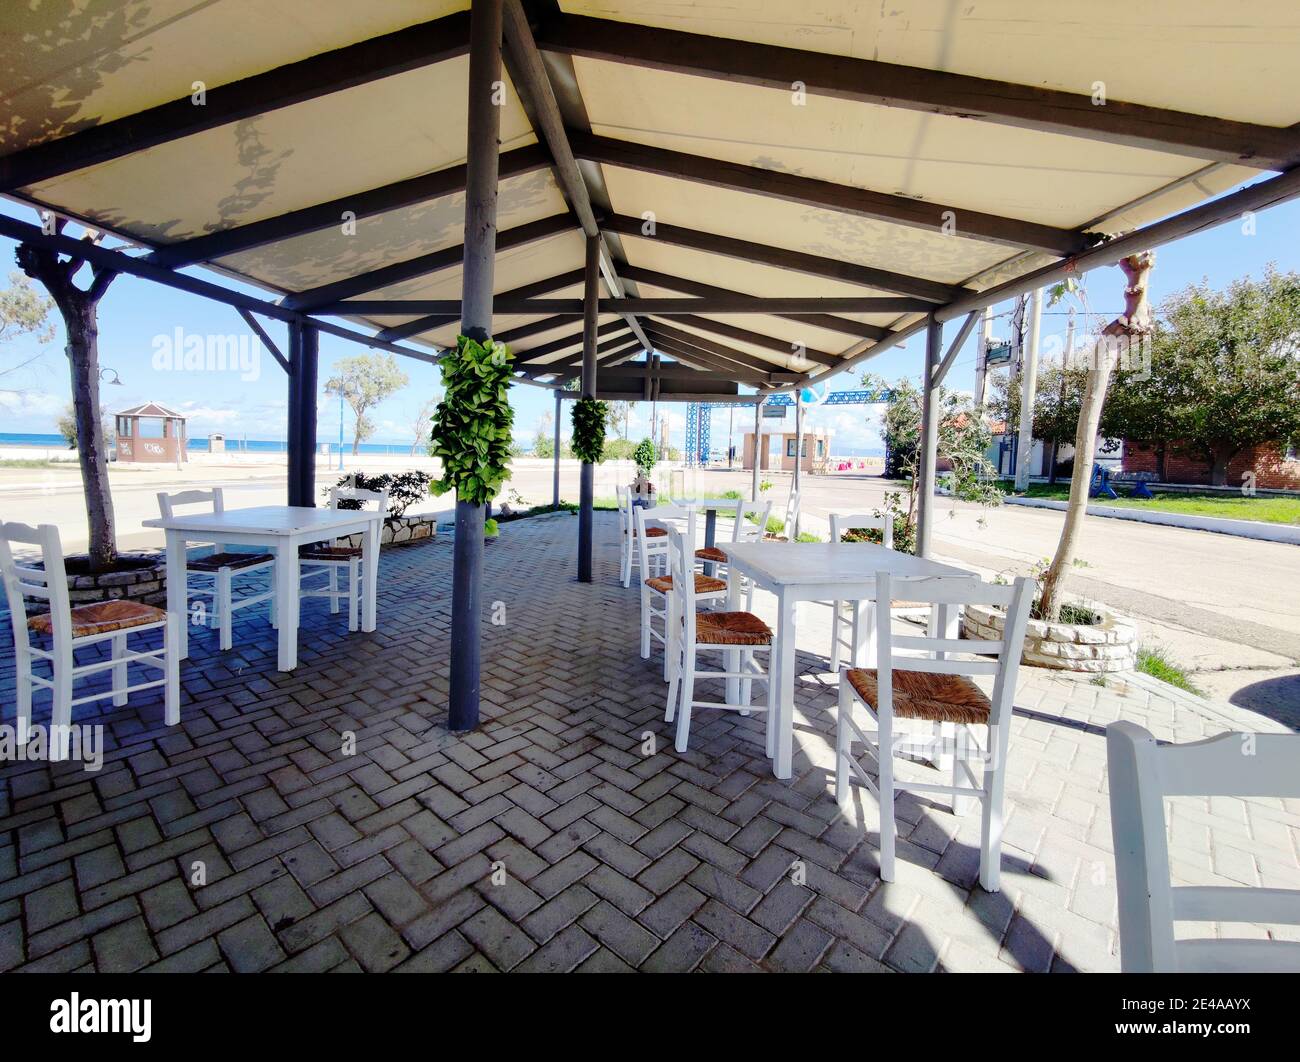 Comportement des gens à Corona Times en Grèce, avec et sans masque, avec des restaurants vides Banque D'Images